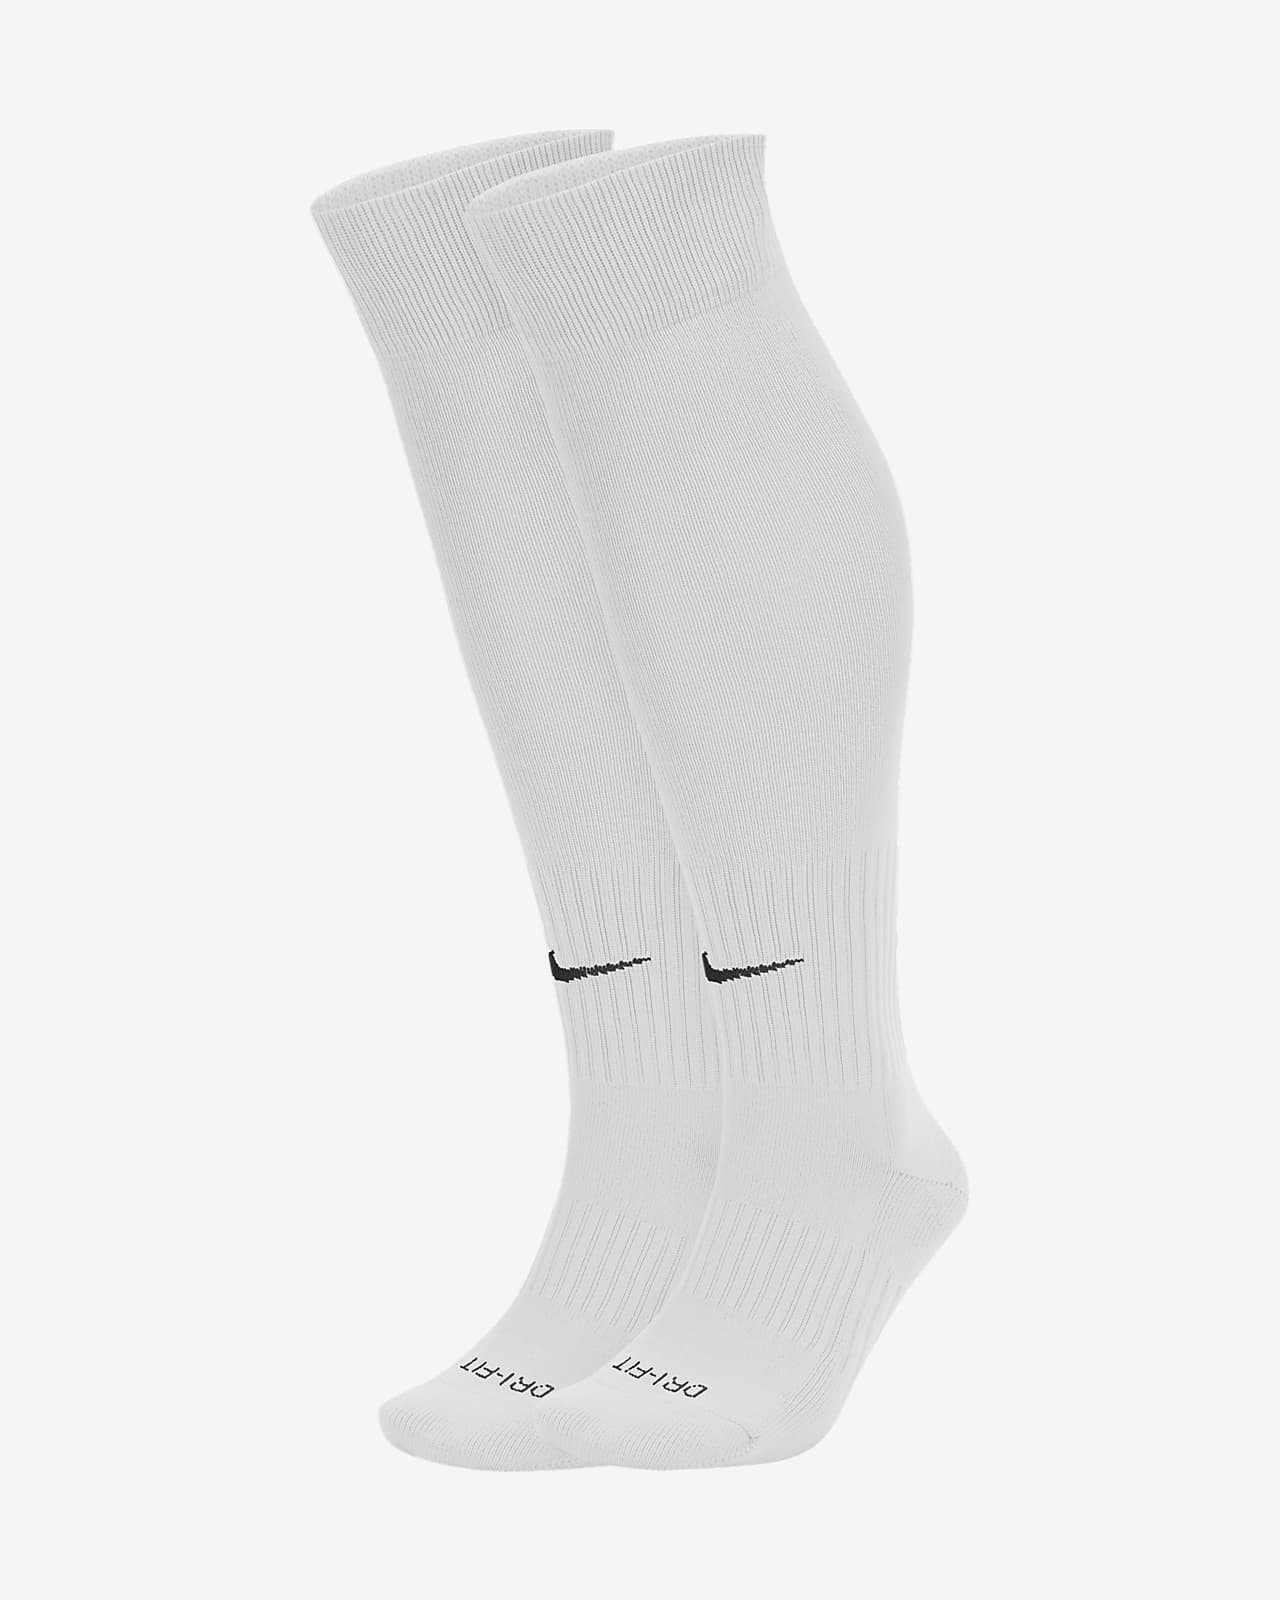 otc soccer socks